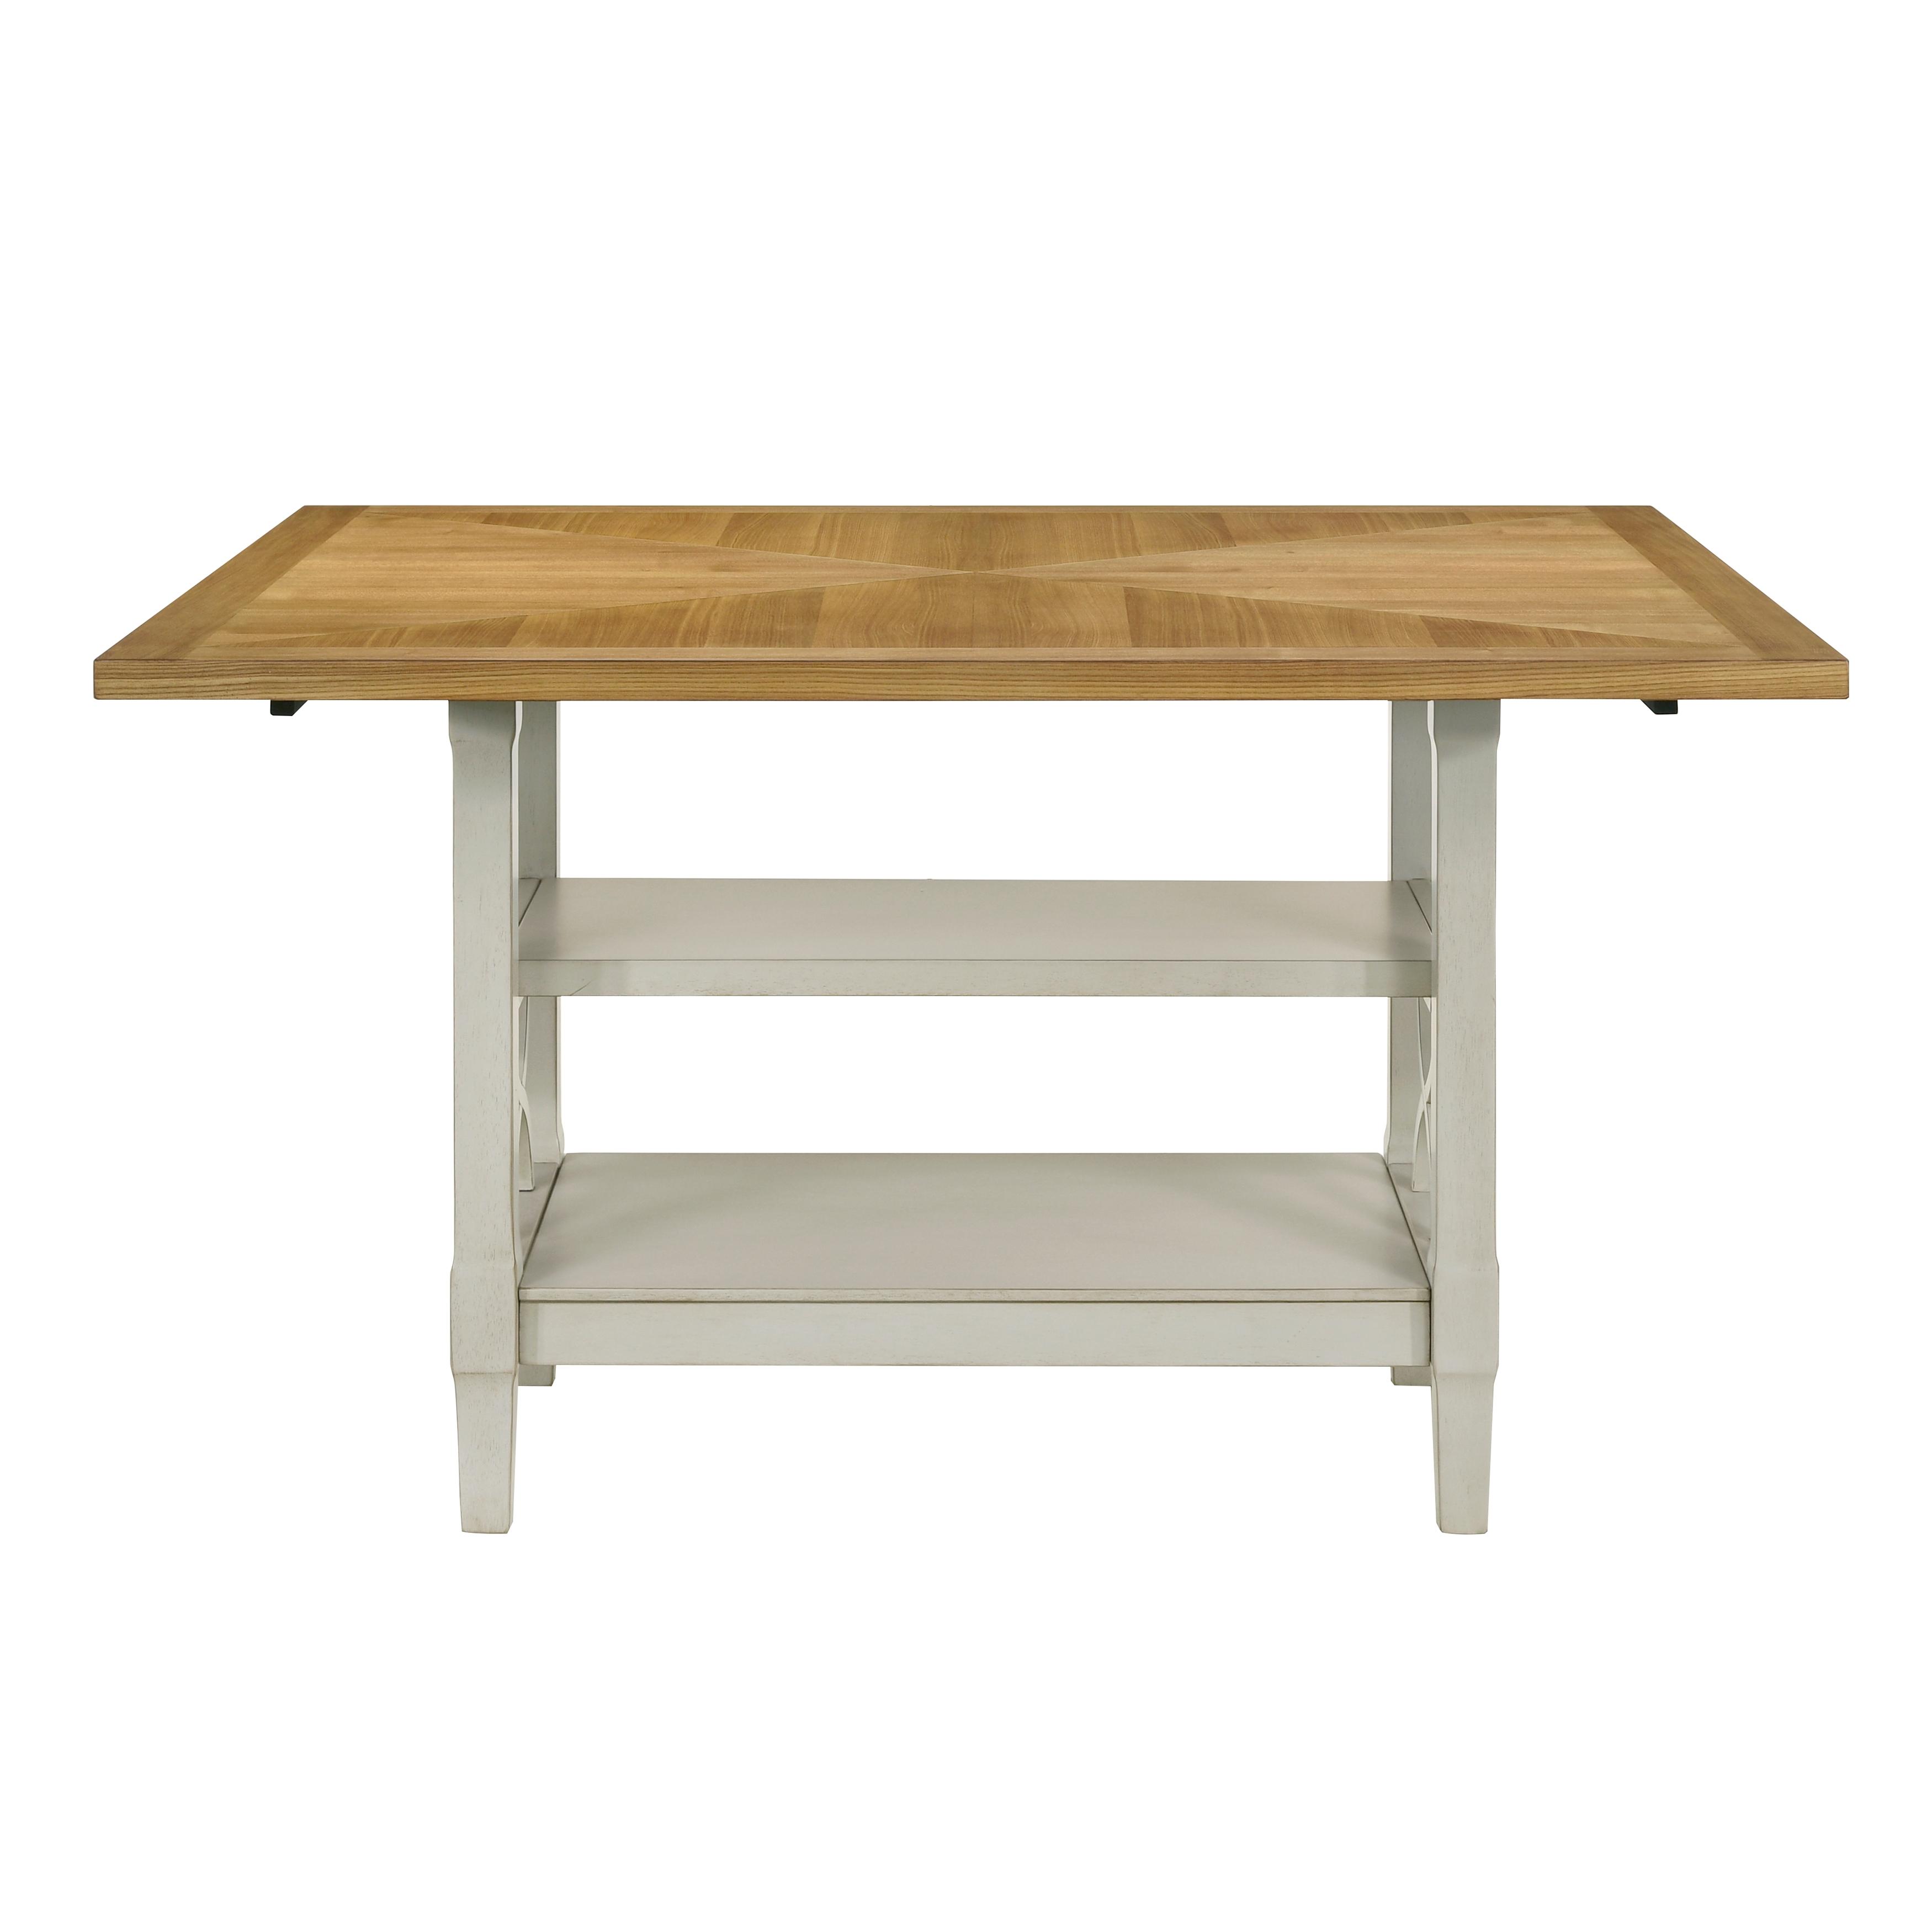 

    
Homelegance Maribelle Counter Height Table Set 6PCS 5910-36*-6PCS Counter Height Table Set Oak/Khaki/Gray 5910-36*-6PCS
